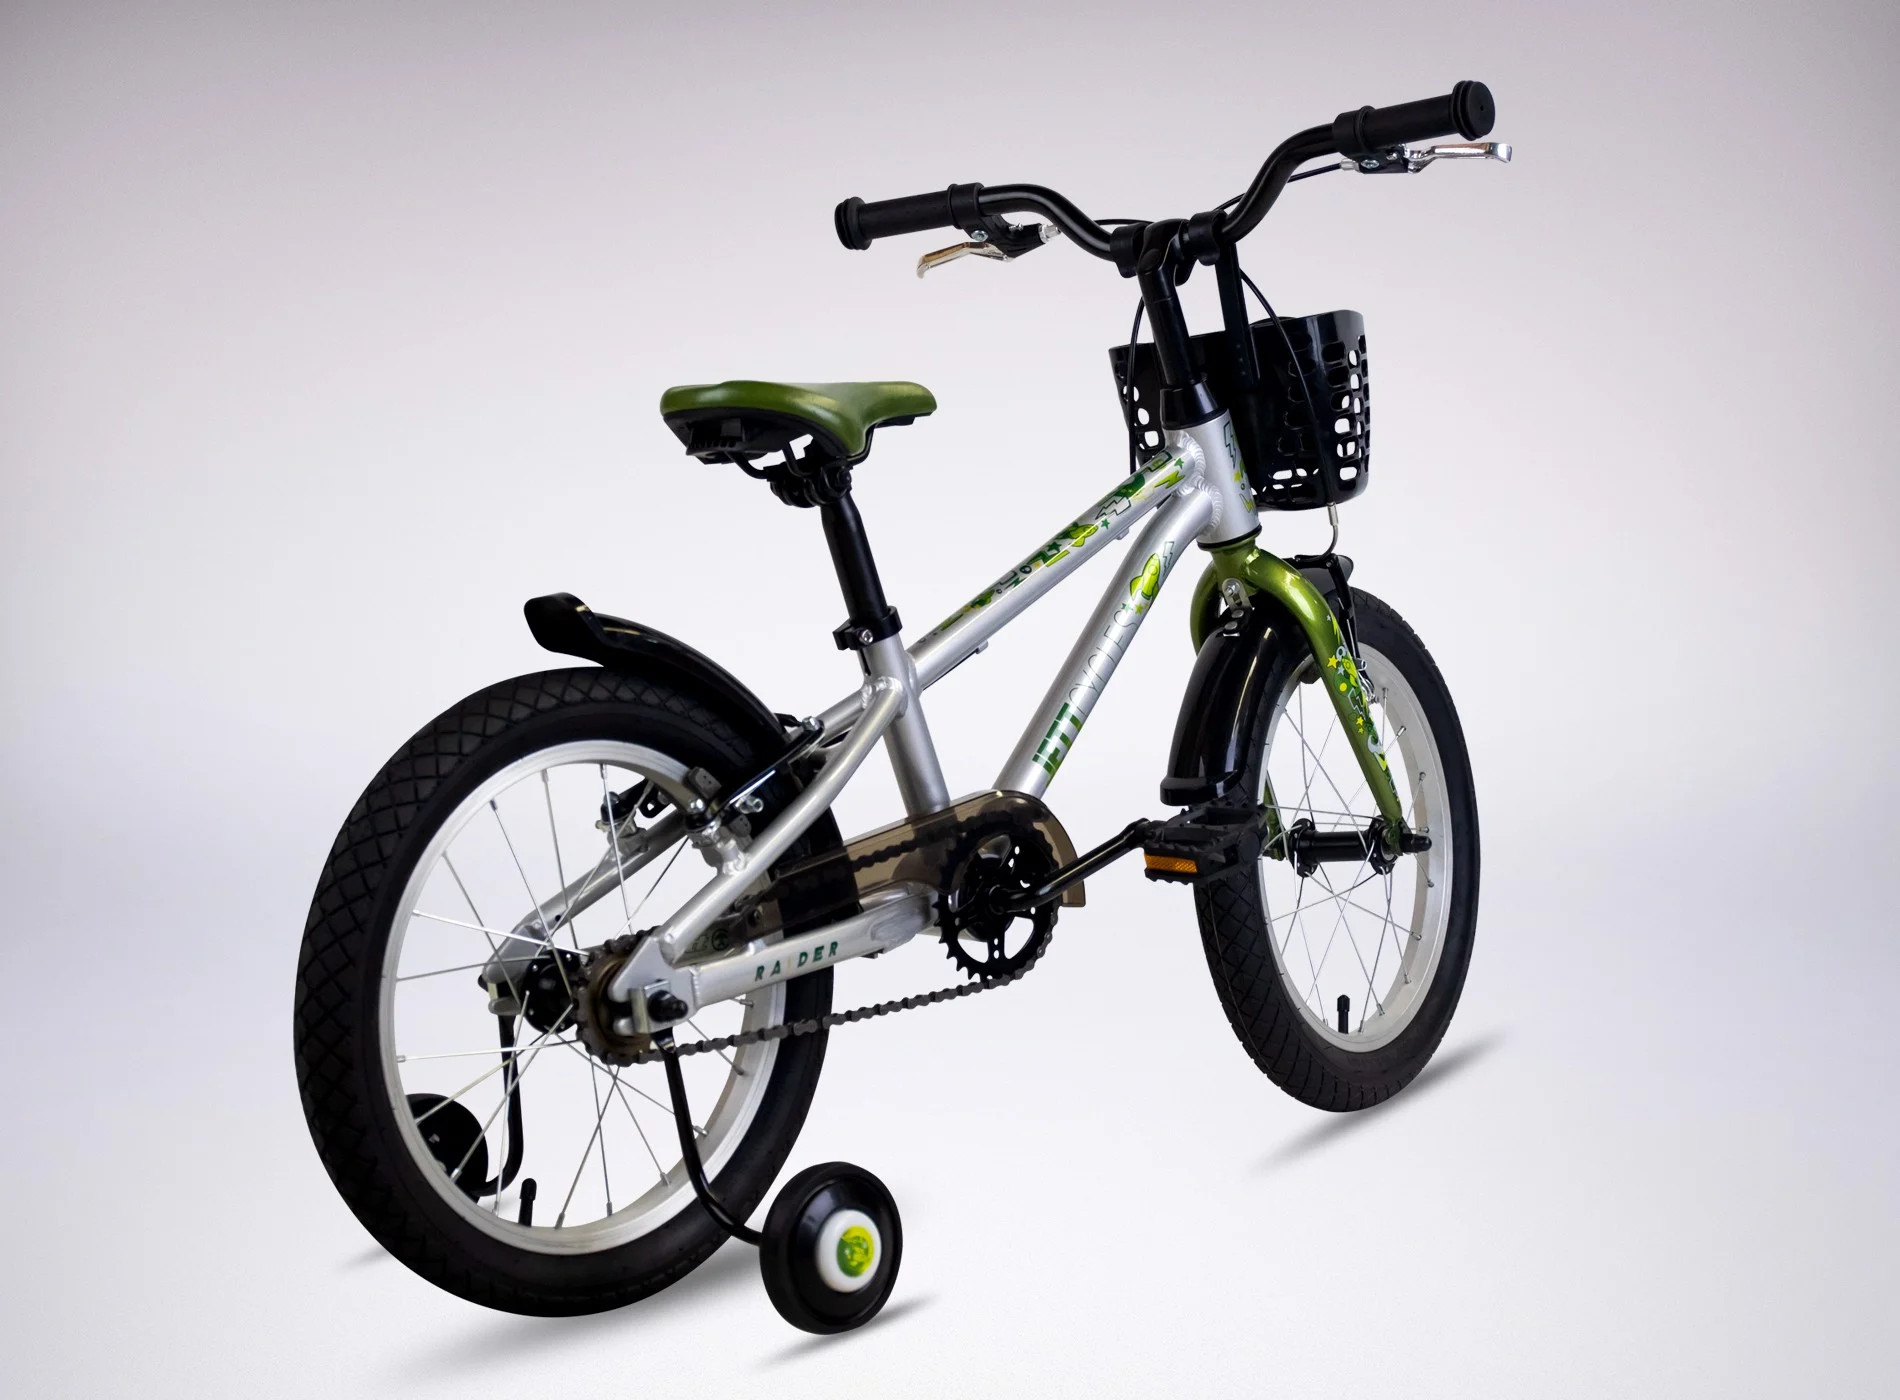 Xe đạp trẻ em bánh 16 inch Jett Raider